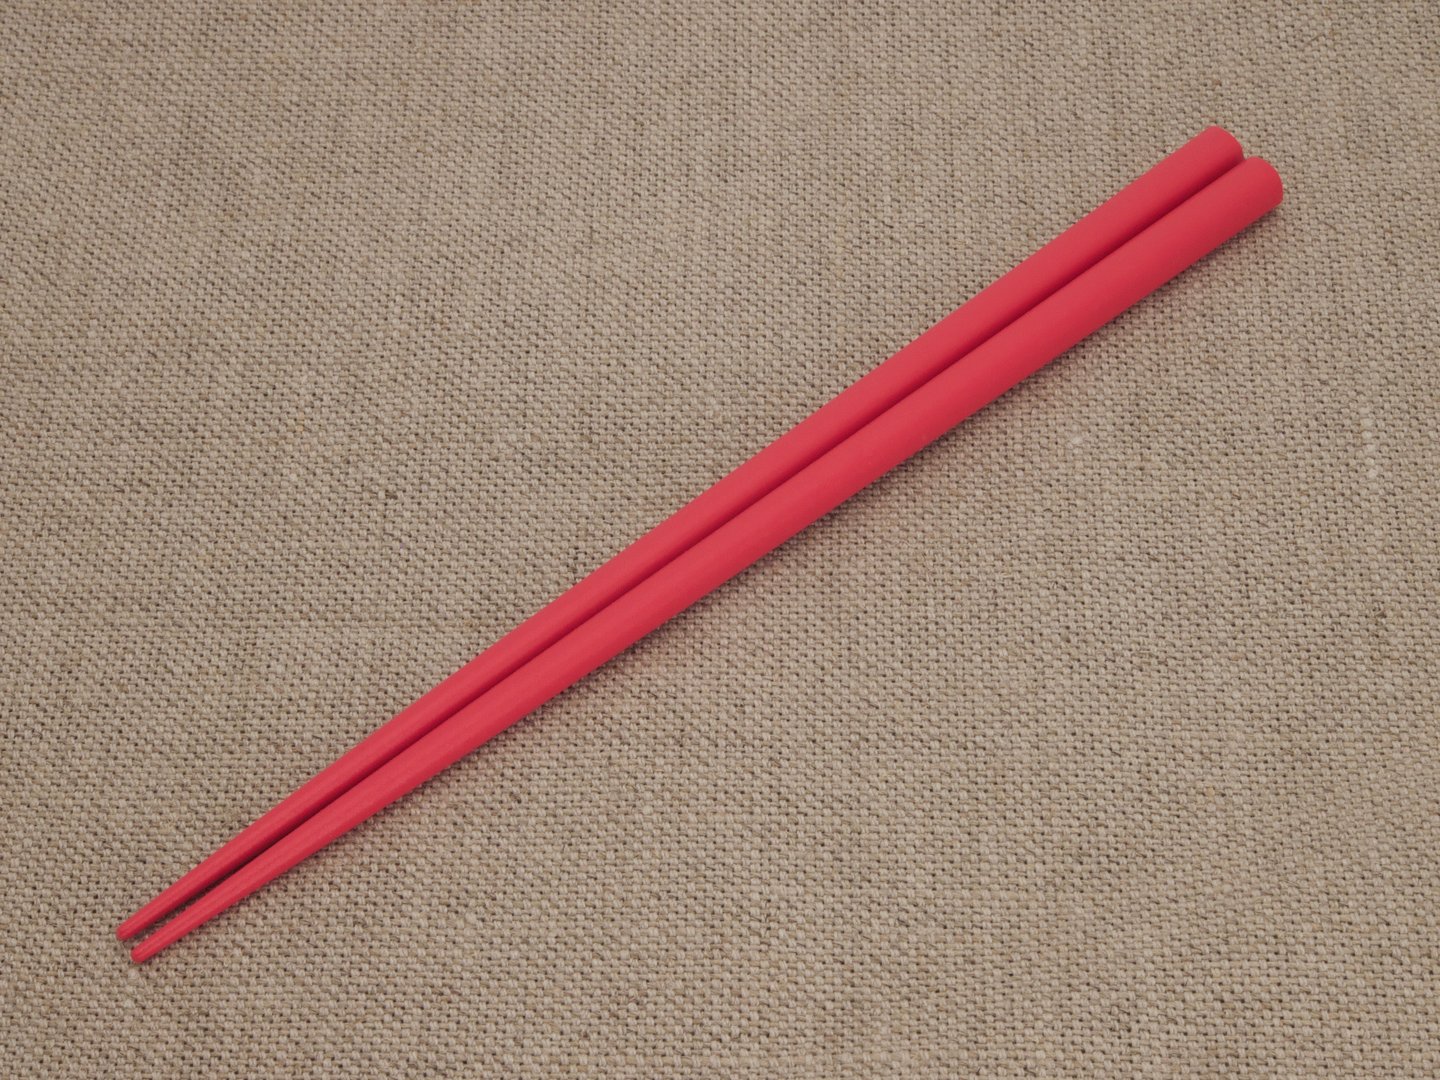 Stäbchen original japanischen holz-rot - 22,5 cm